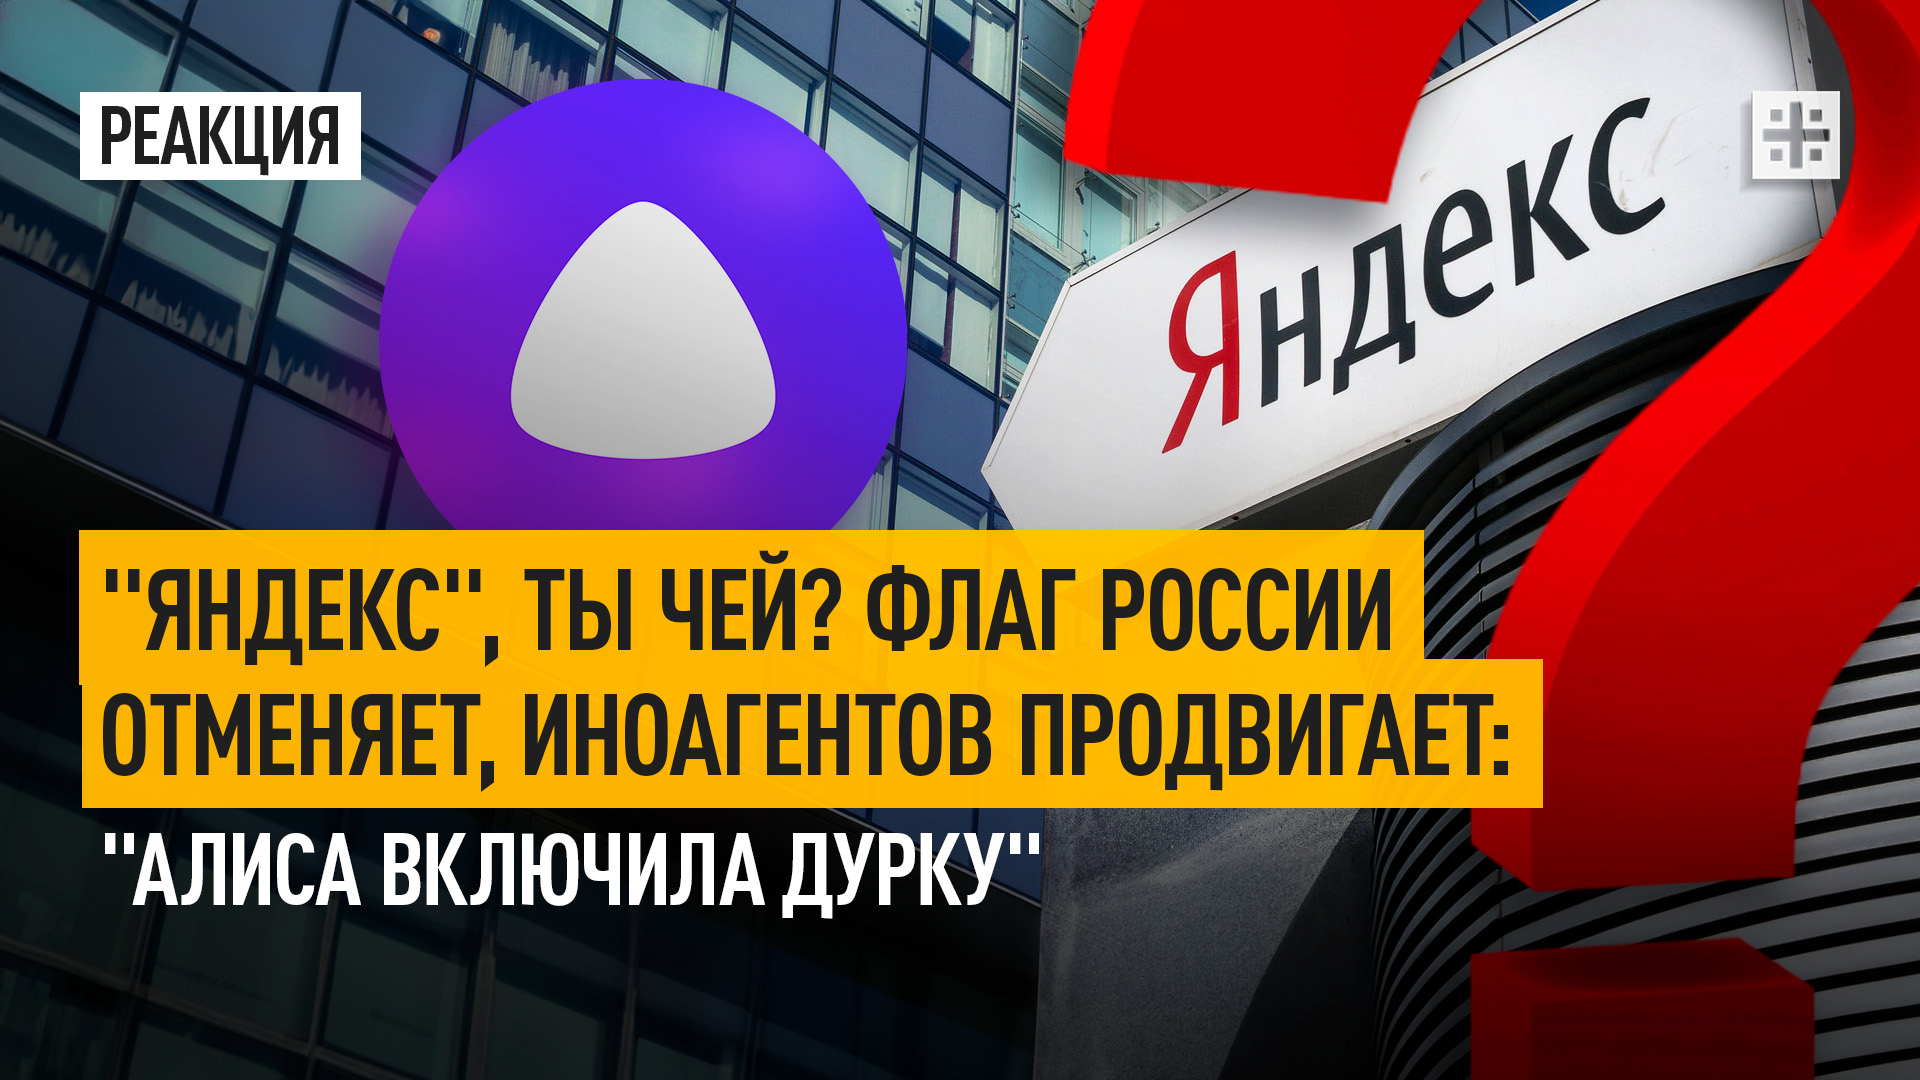 "Яндекс", ты чей? Флаг России отменяет, иноагентов продвигает: "Алиса включила дурку"